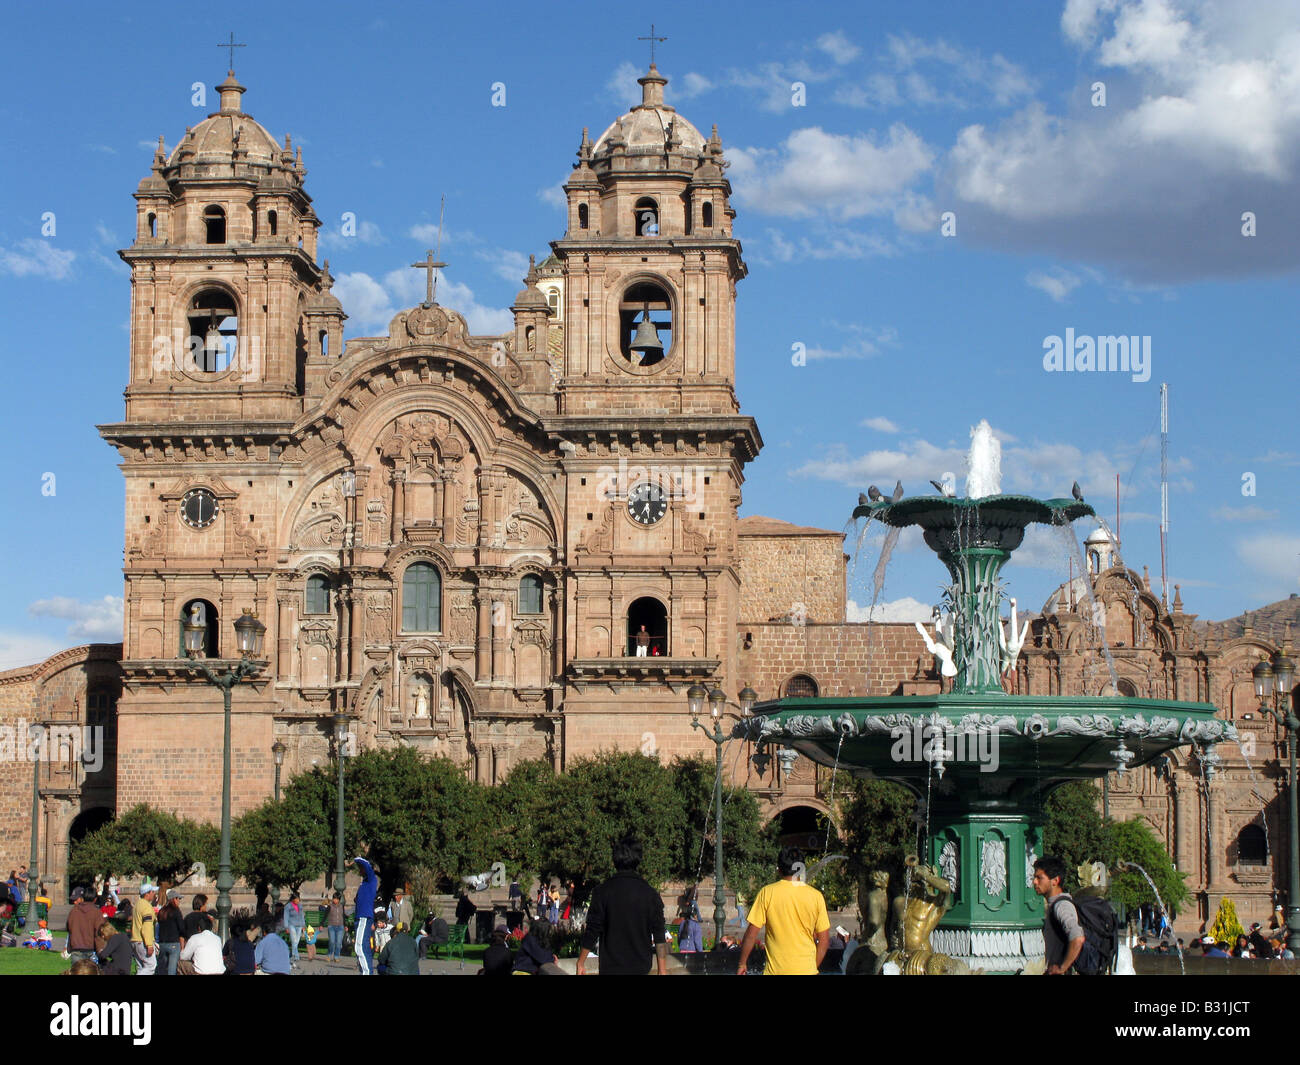 The Iglesia de la Compania de Jesus church in Plaza de Armas main square in Cusco, Peru, South America Stock Photo